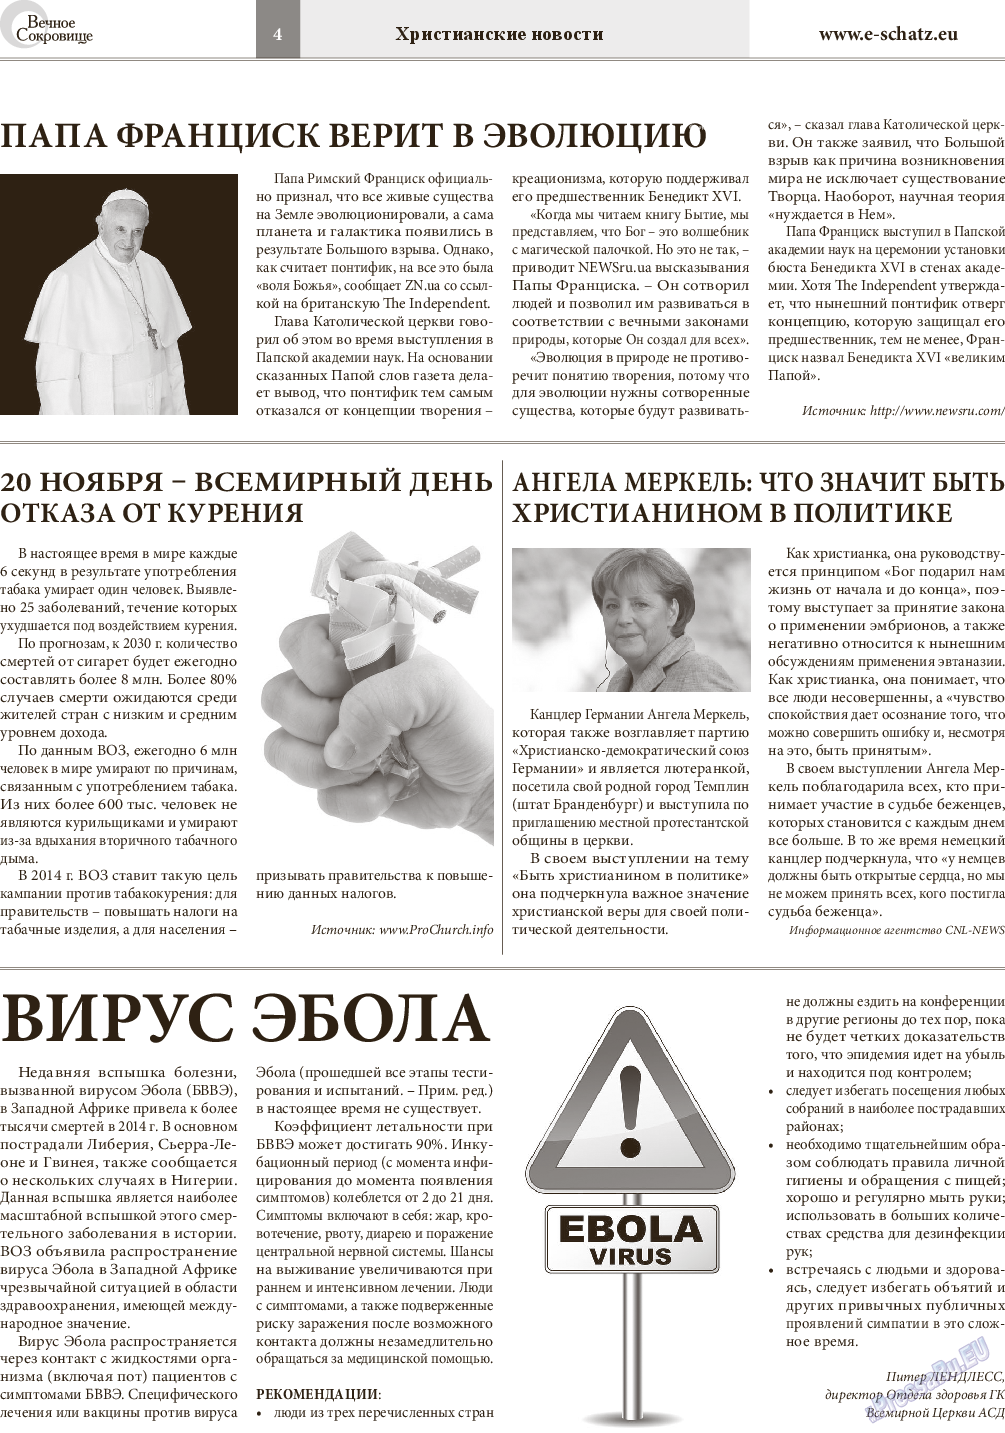 Вечное сокровище, газета. 2014 №6 стр.4